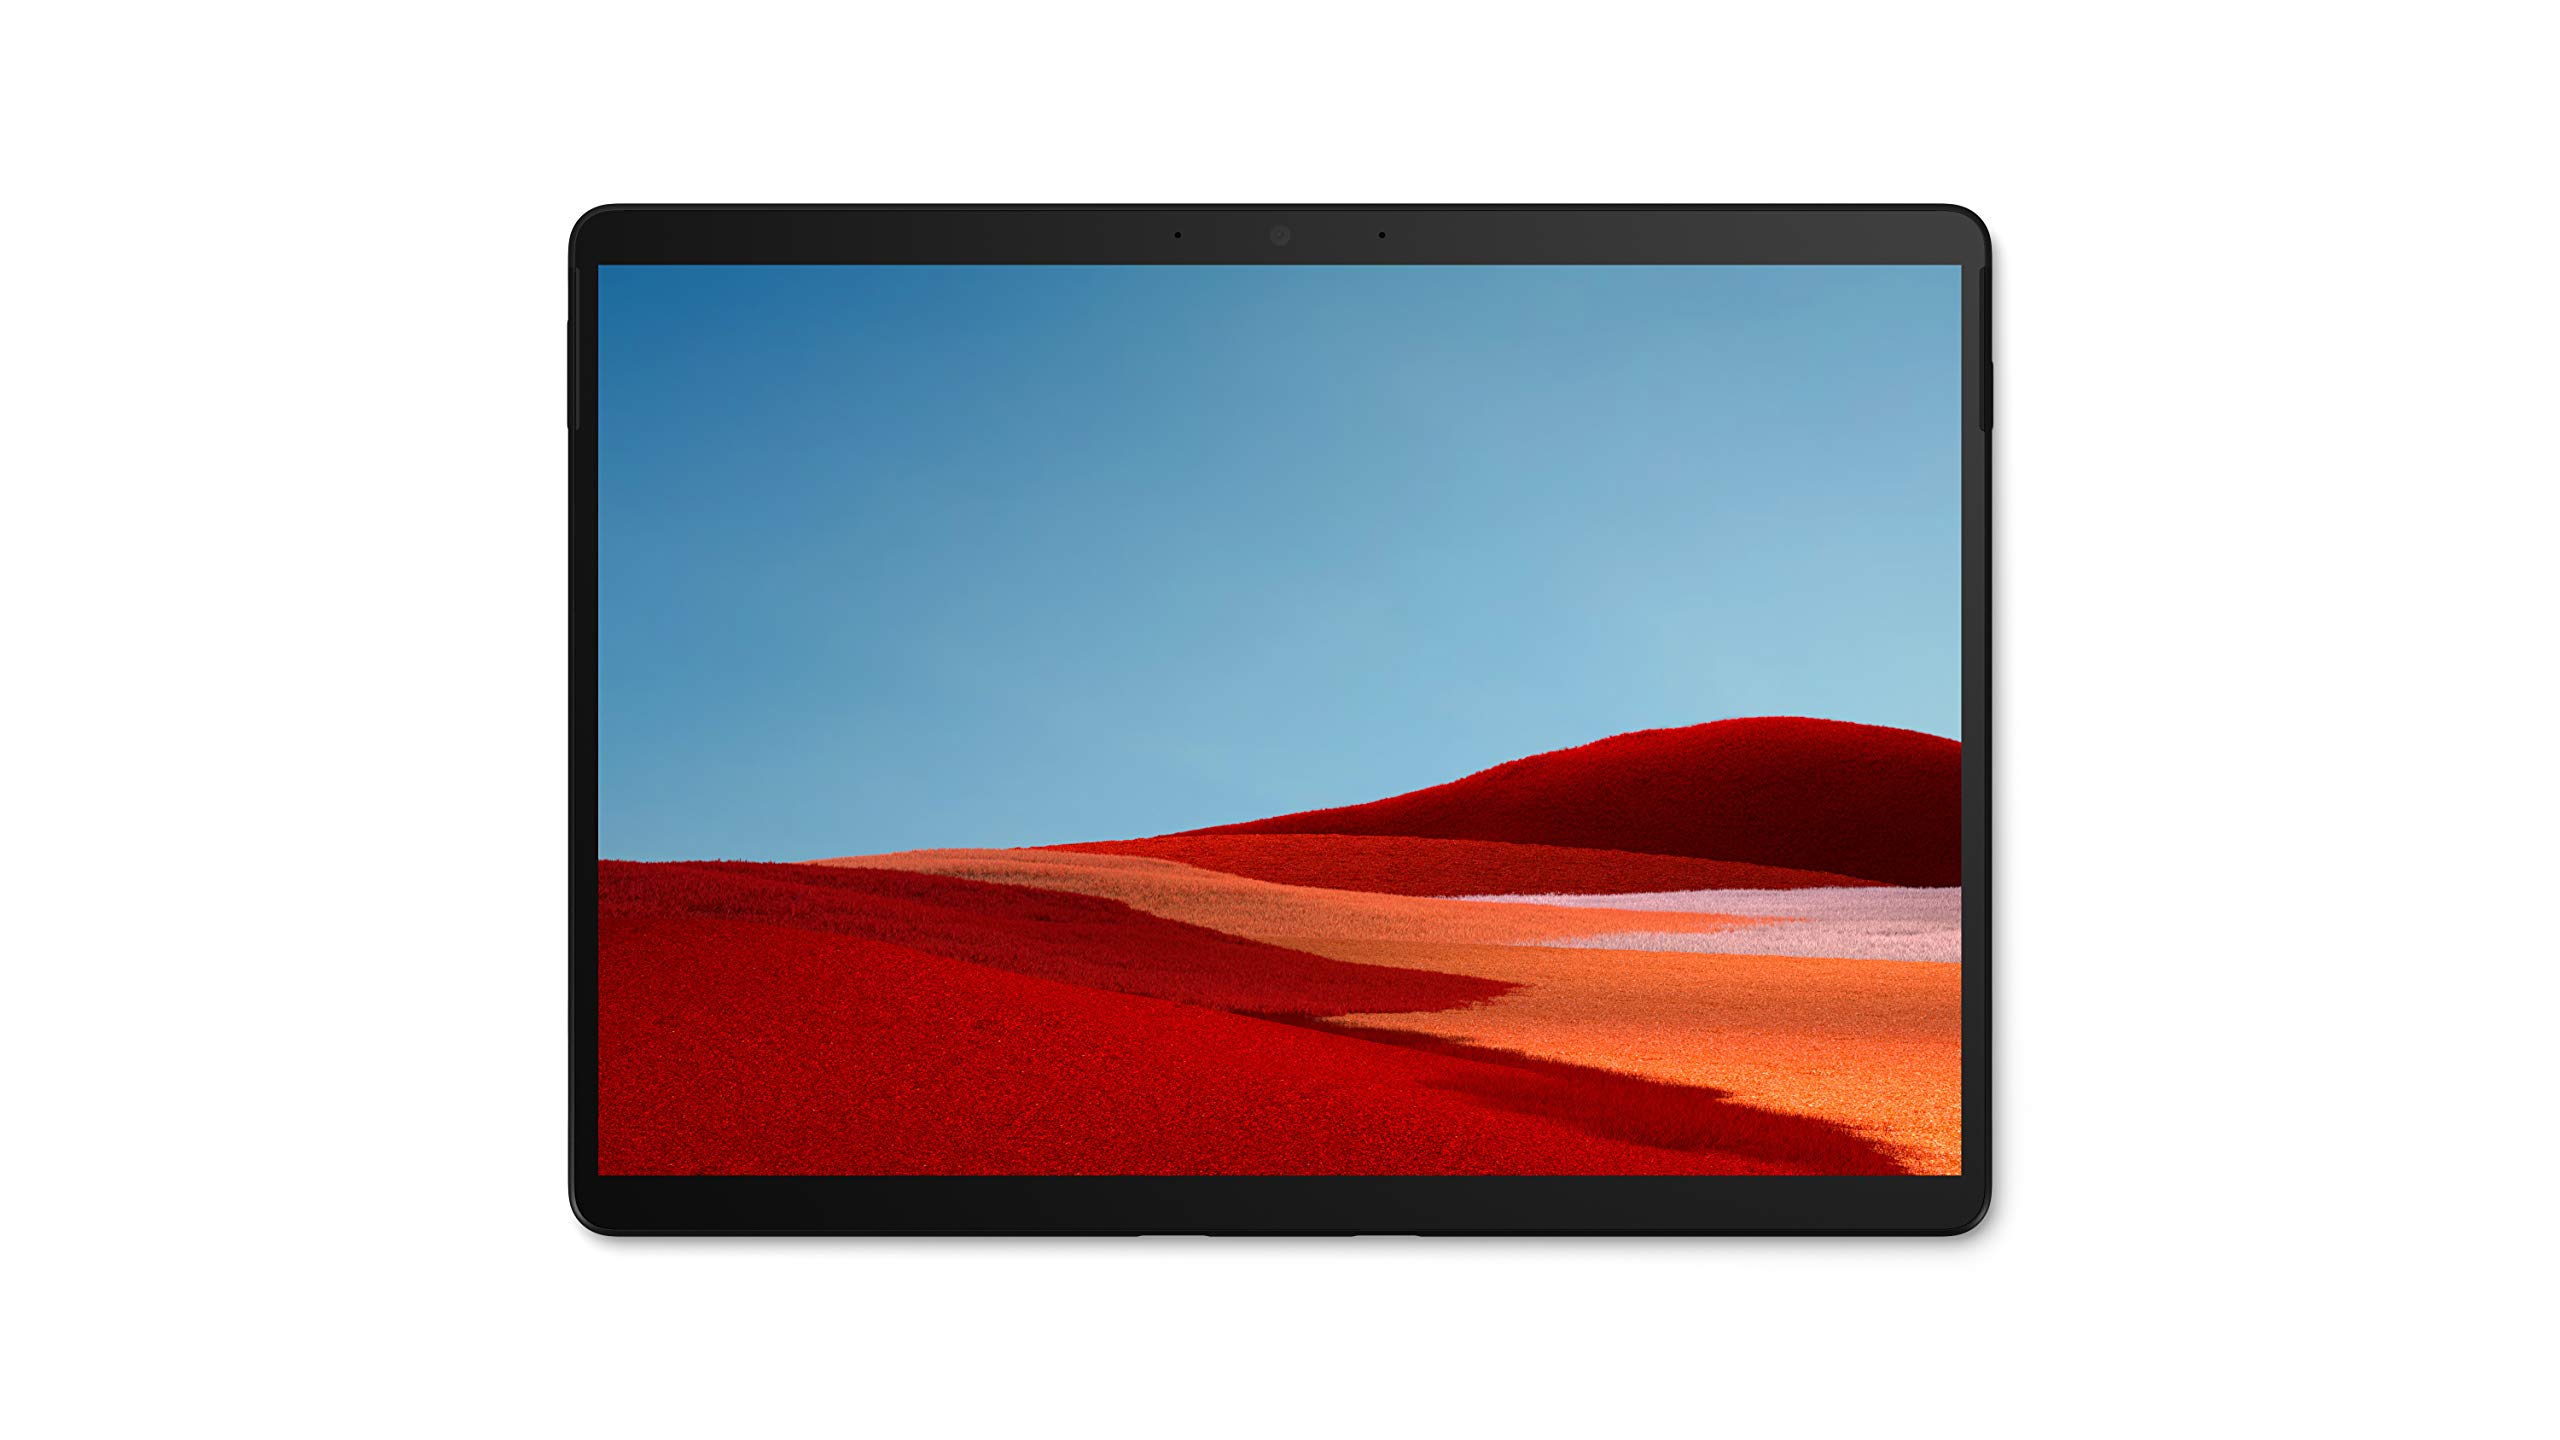 Surface Pro X 8 256 Lte Microsoft Khl 00003 889842505863